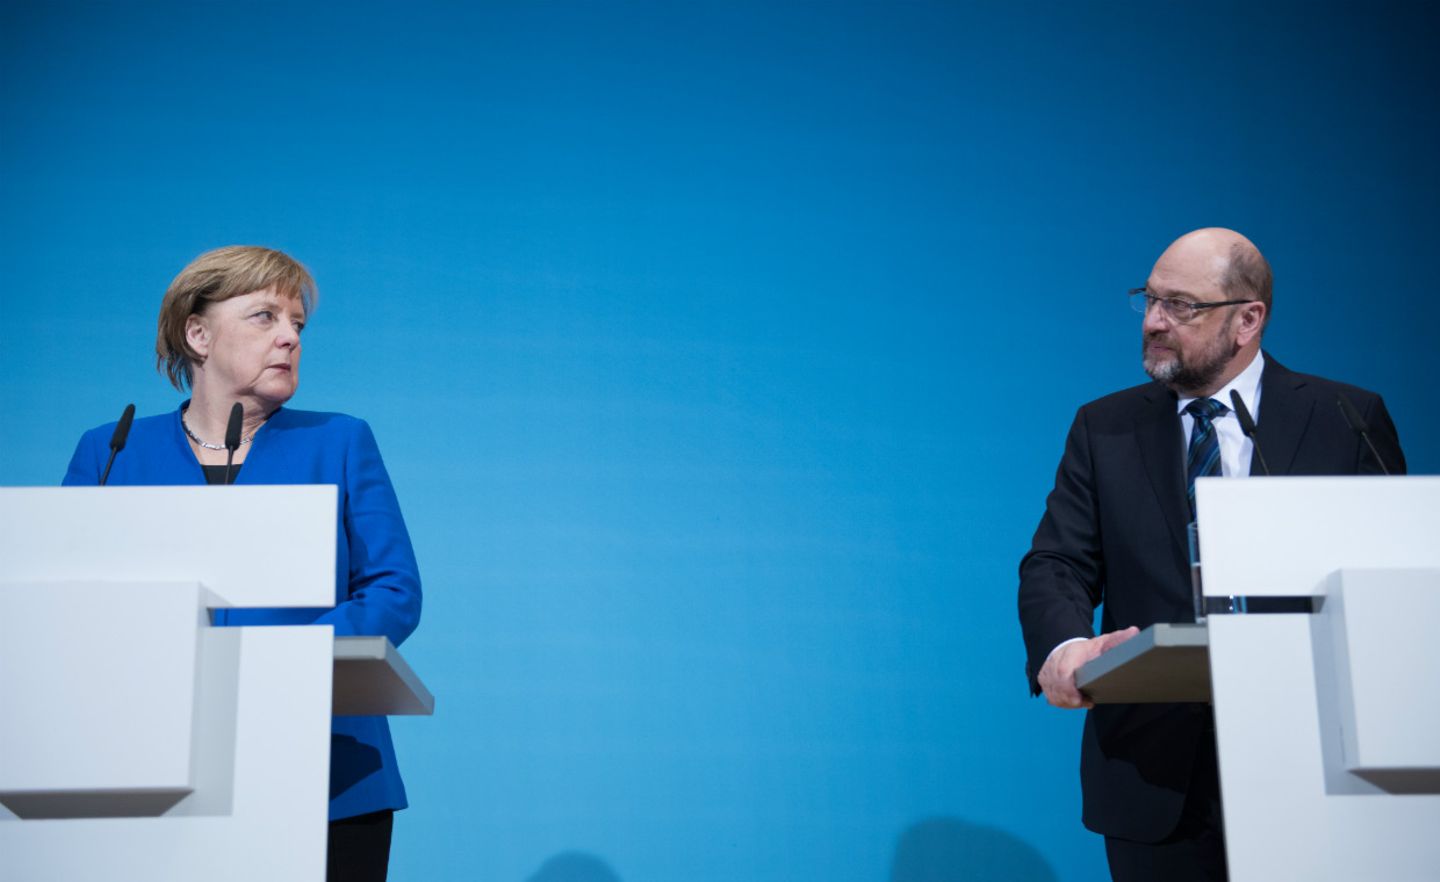 CDU-Chefin Merkel und der SPD-Vorsitzende Schulz erläutern das Ergebnis der Sondierungsgespräche vor der Presse